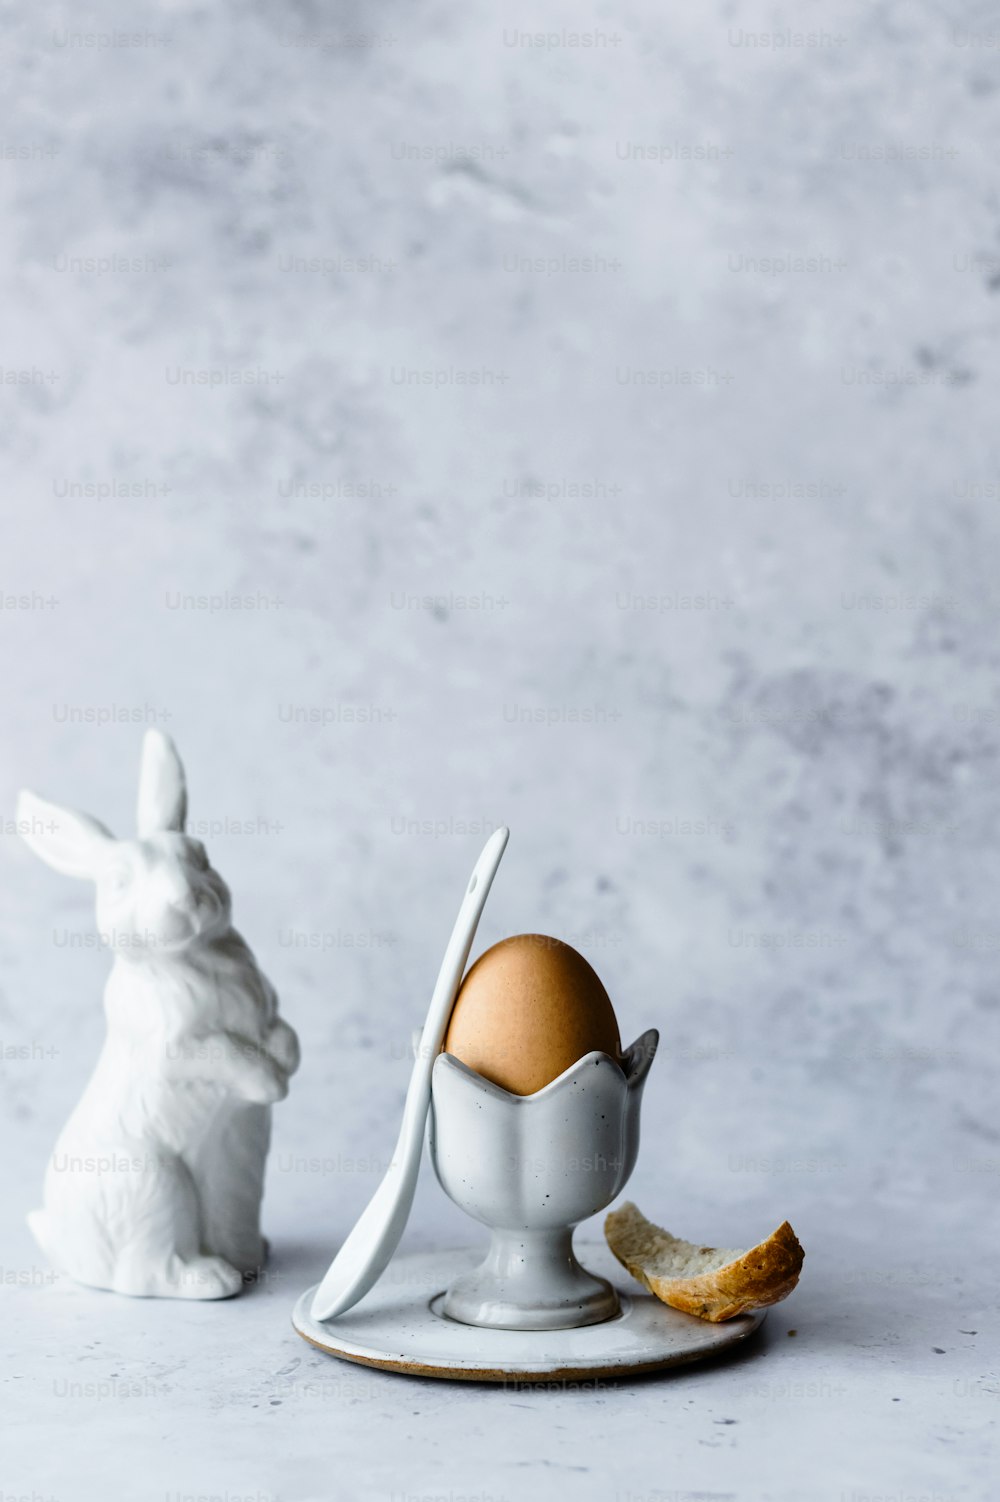 Una statuetta di coniglio bianco accanto a un uovo rotto